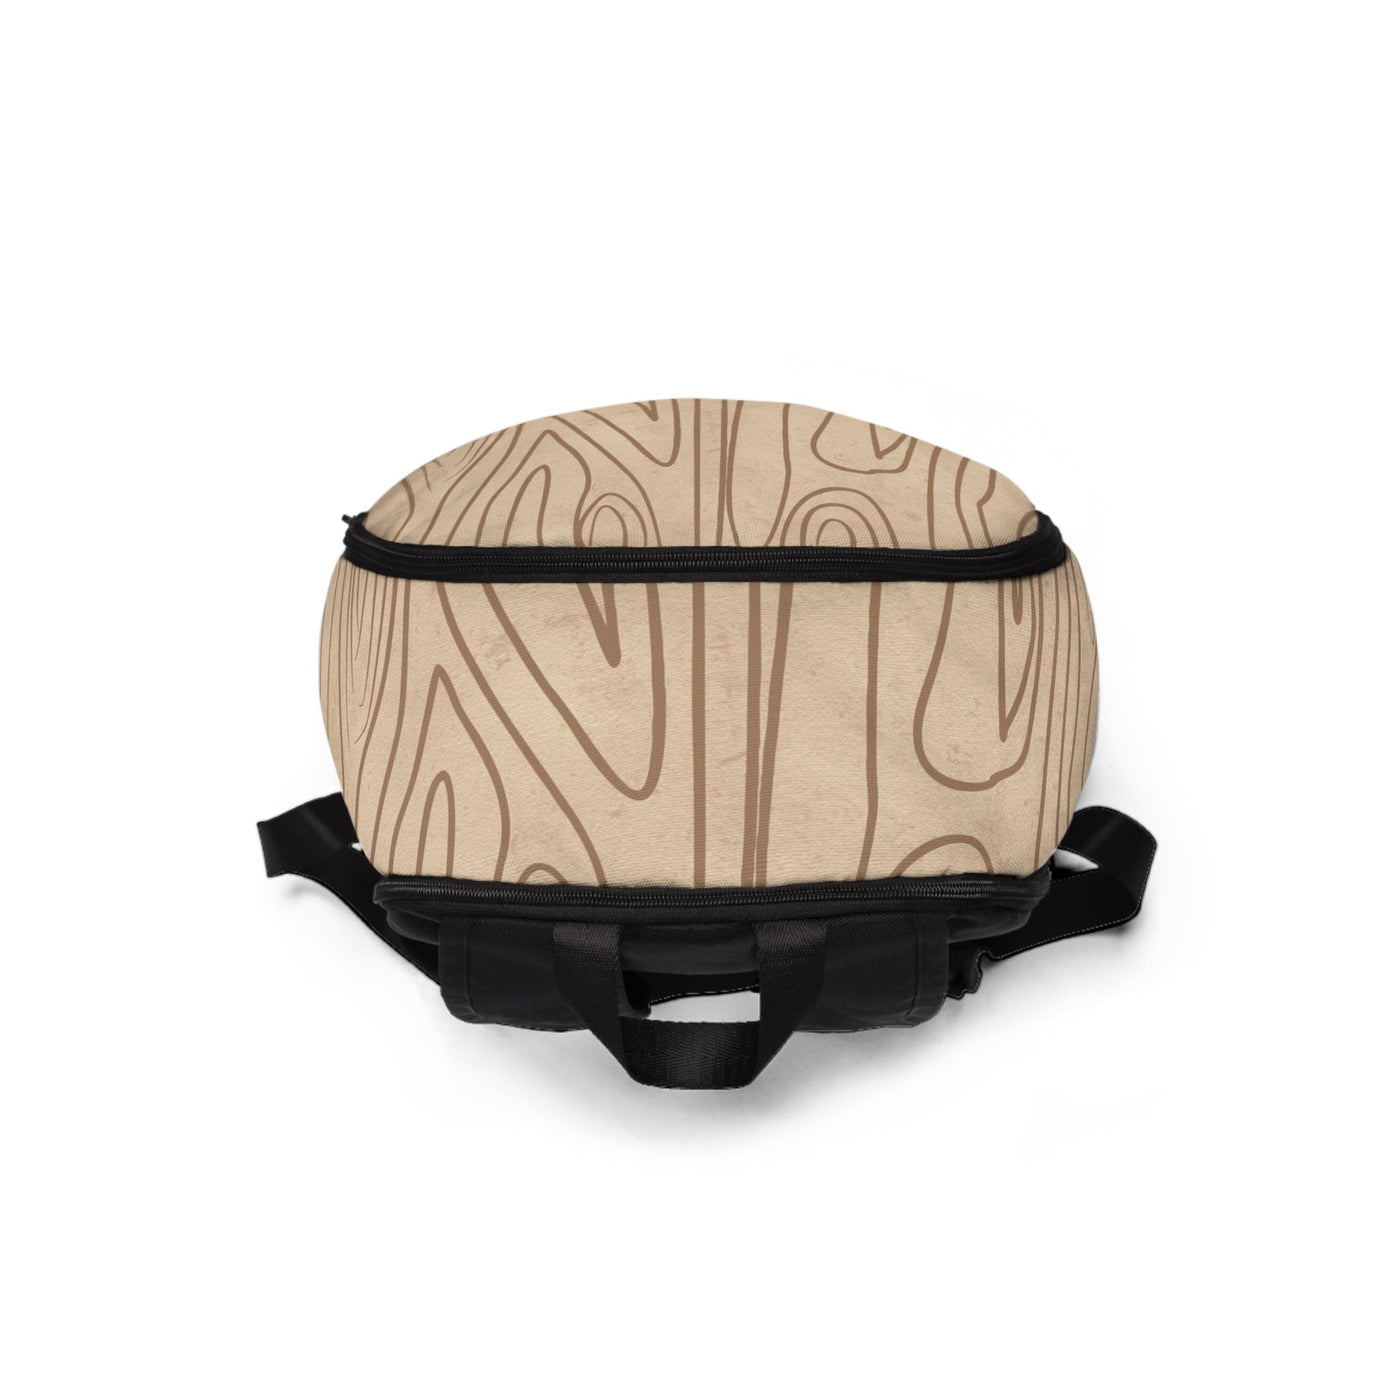 Fashion Backpack Waterproof Beige And Brown Tree Sketch Line Art - Bags